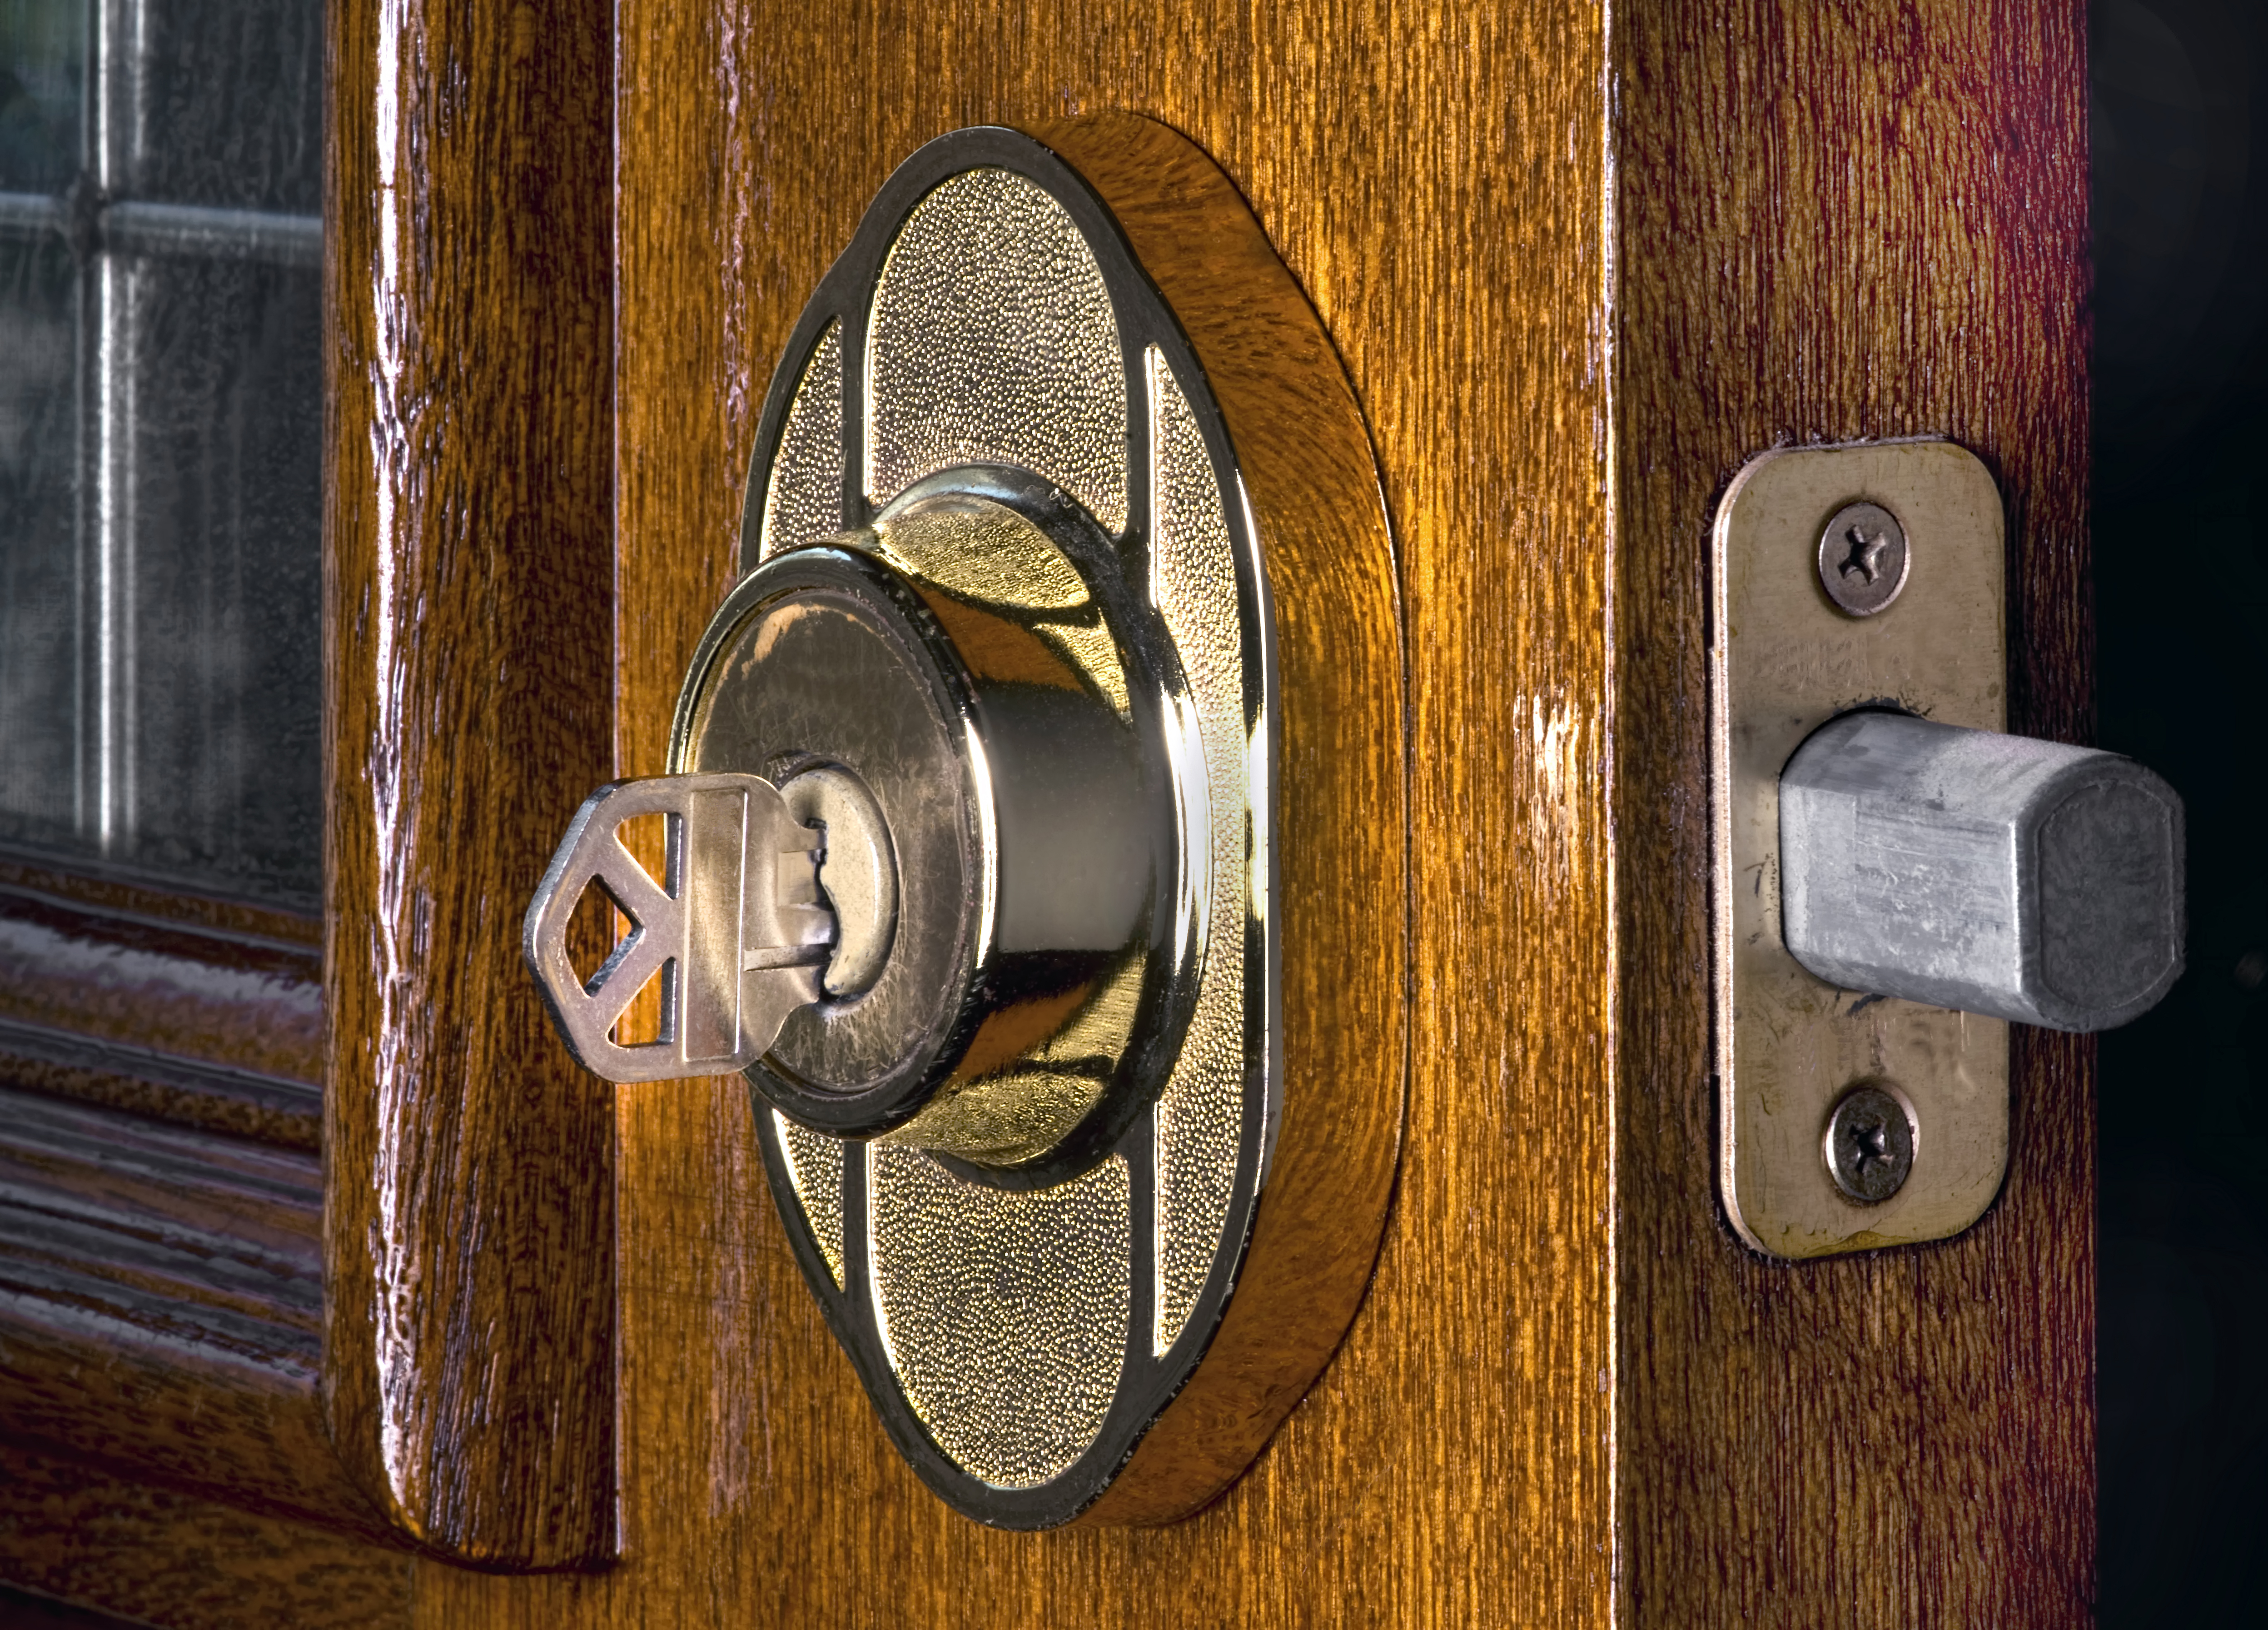 How to Re-Key a Door Lock (DIY)